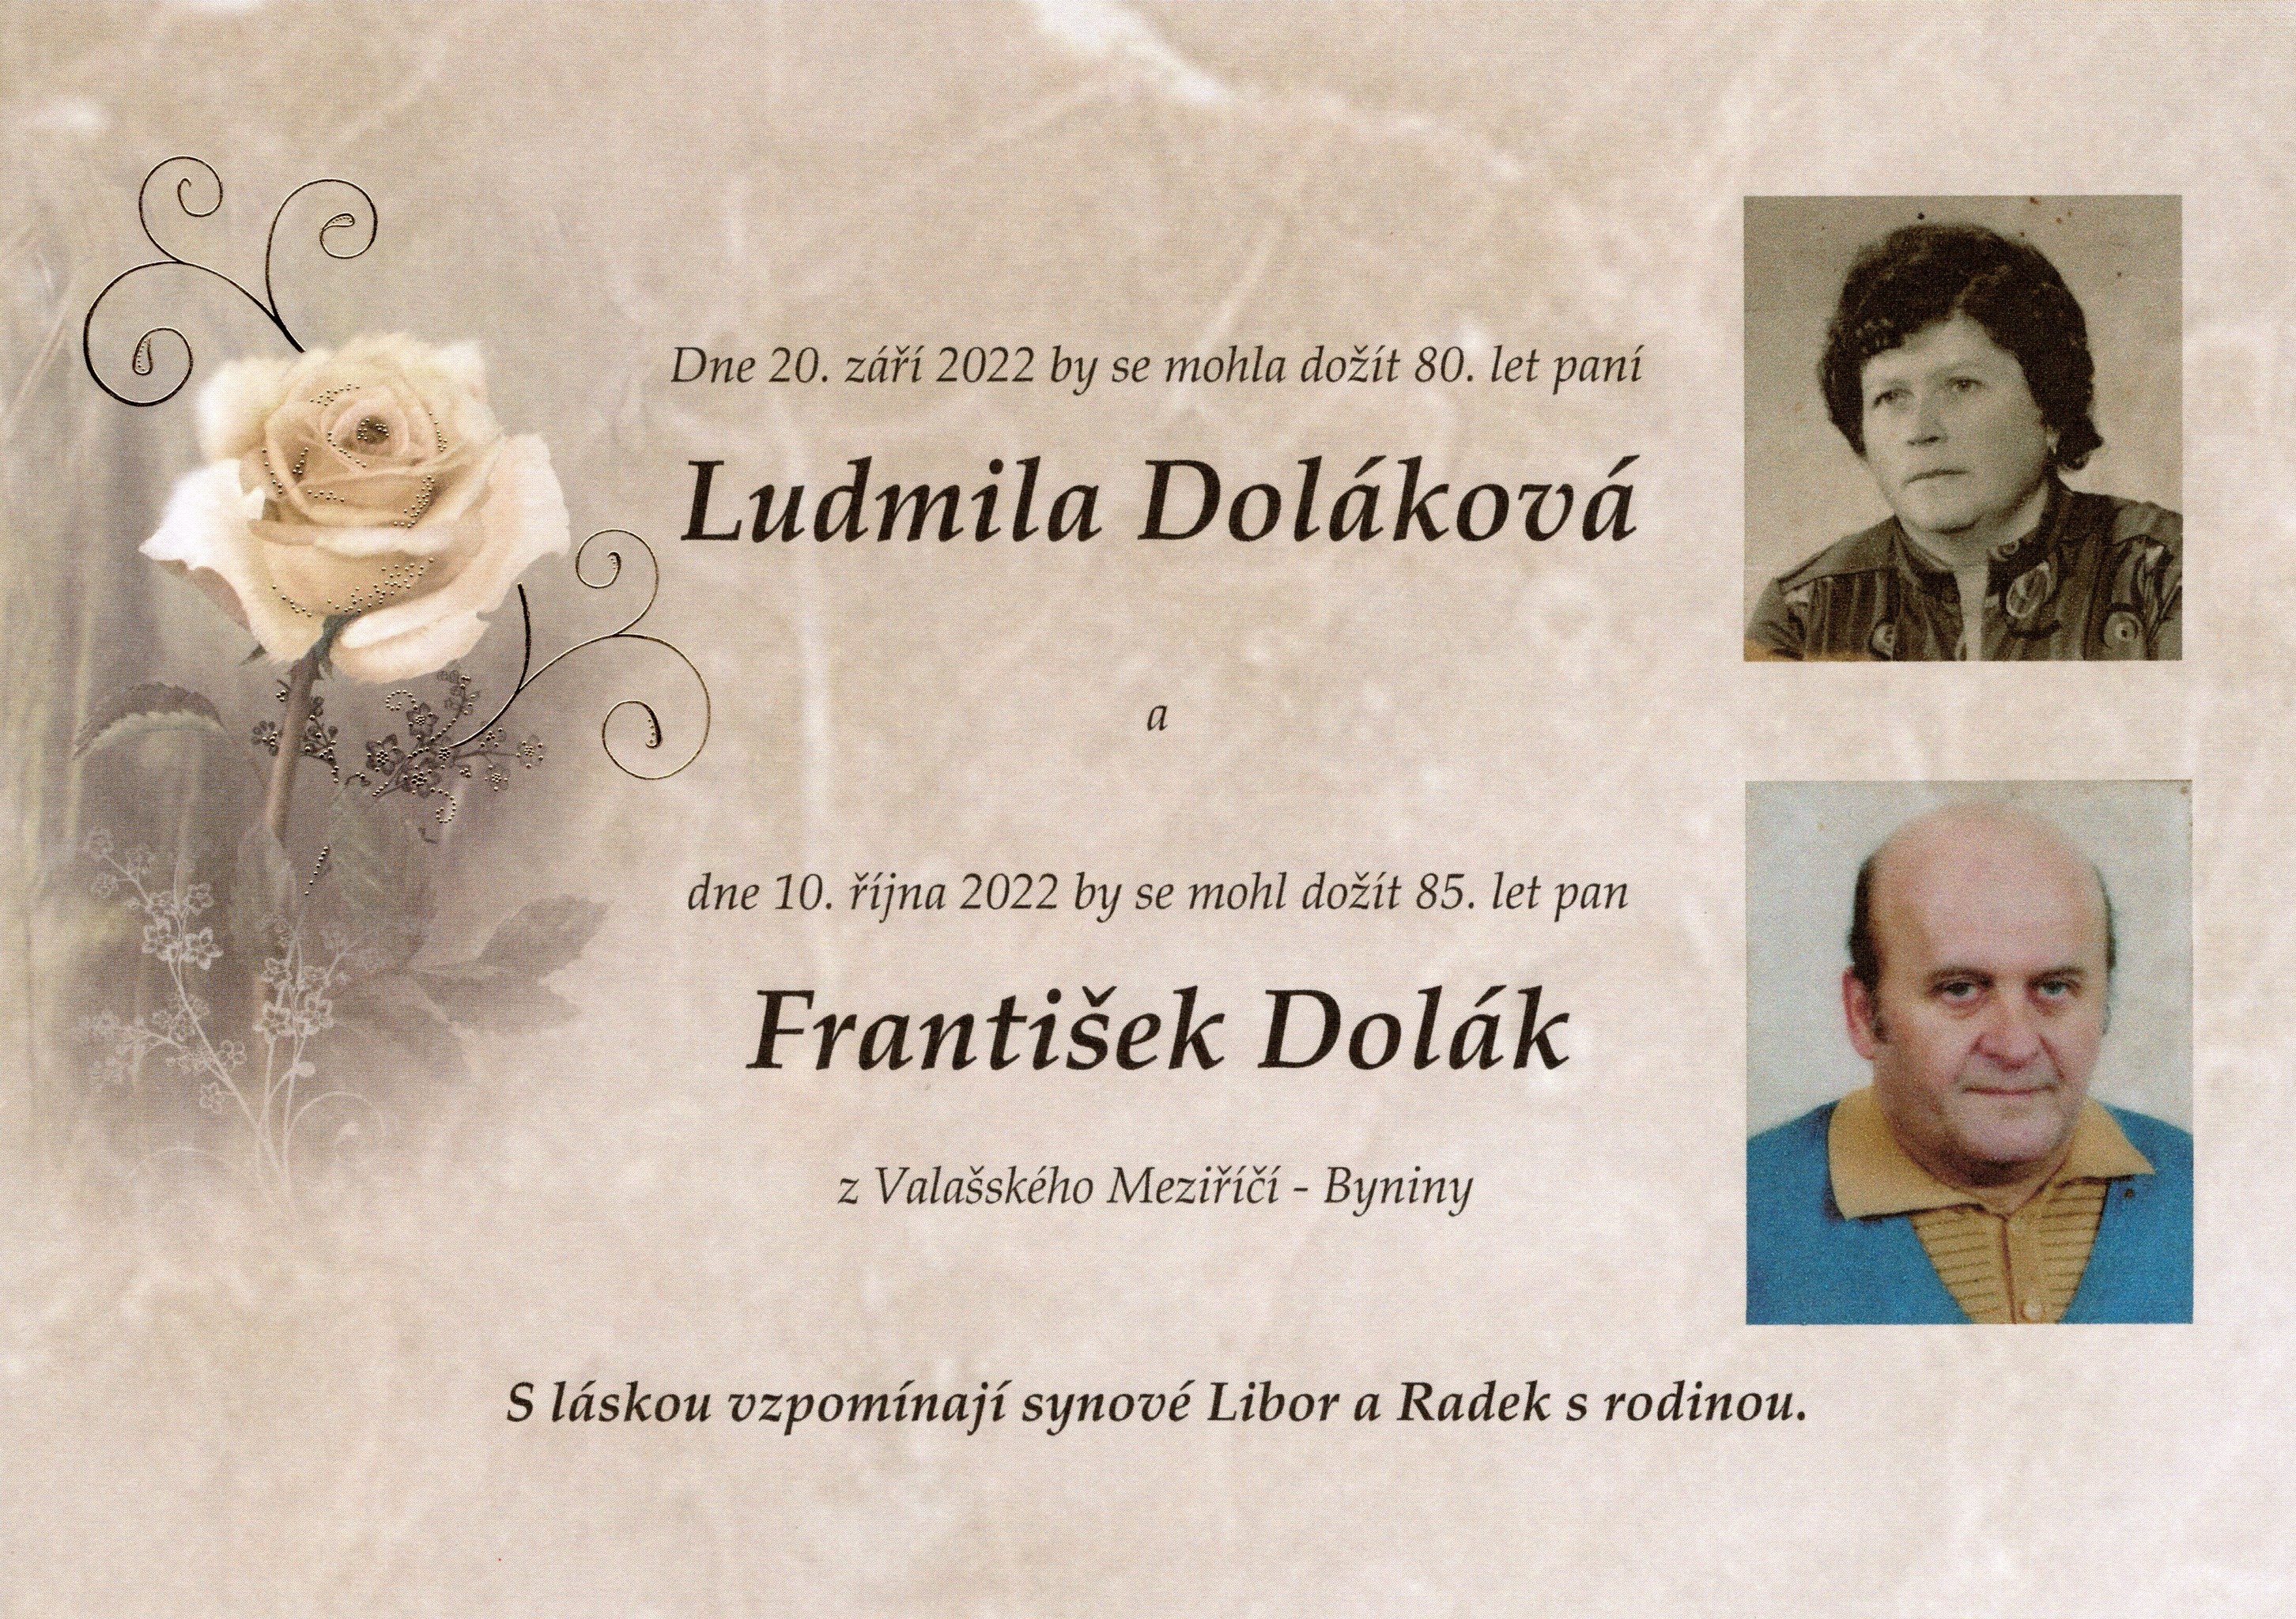 Paní Ludmila Doláková a pan František Dolák